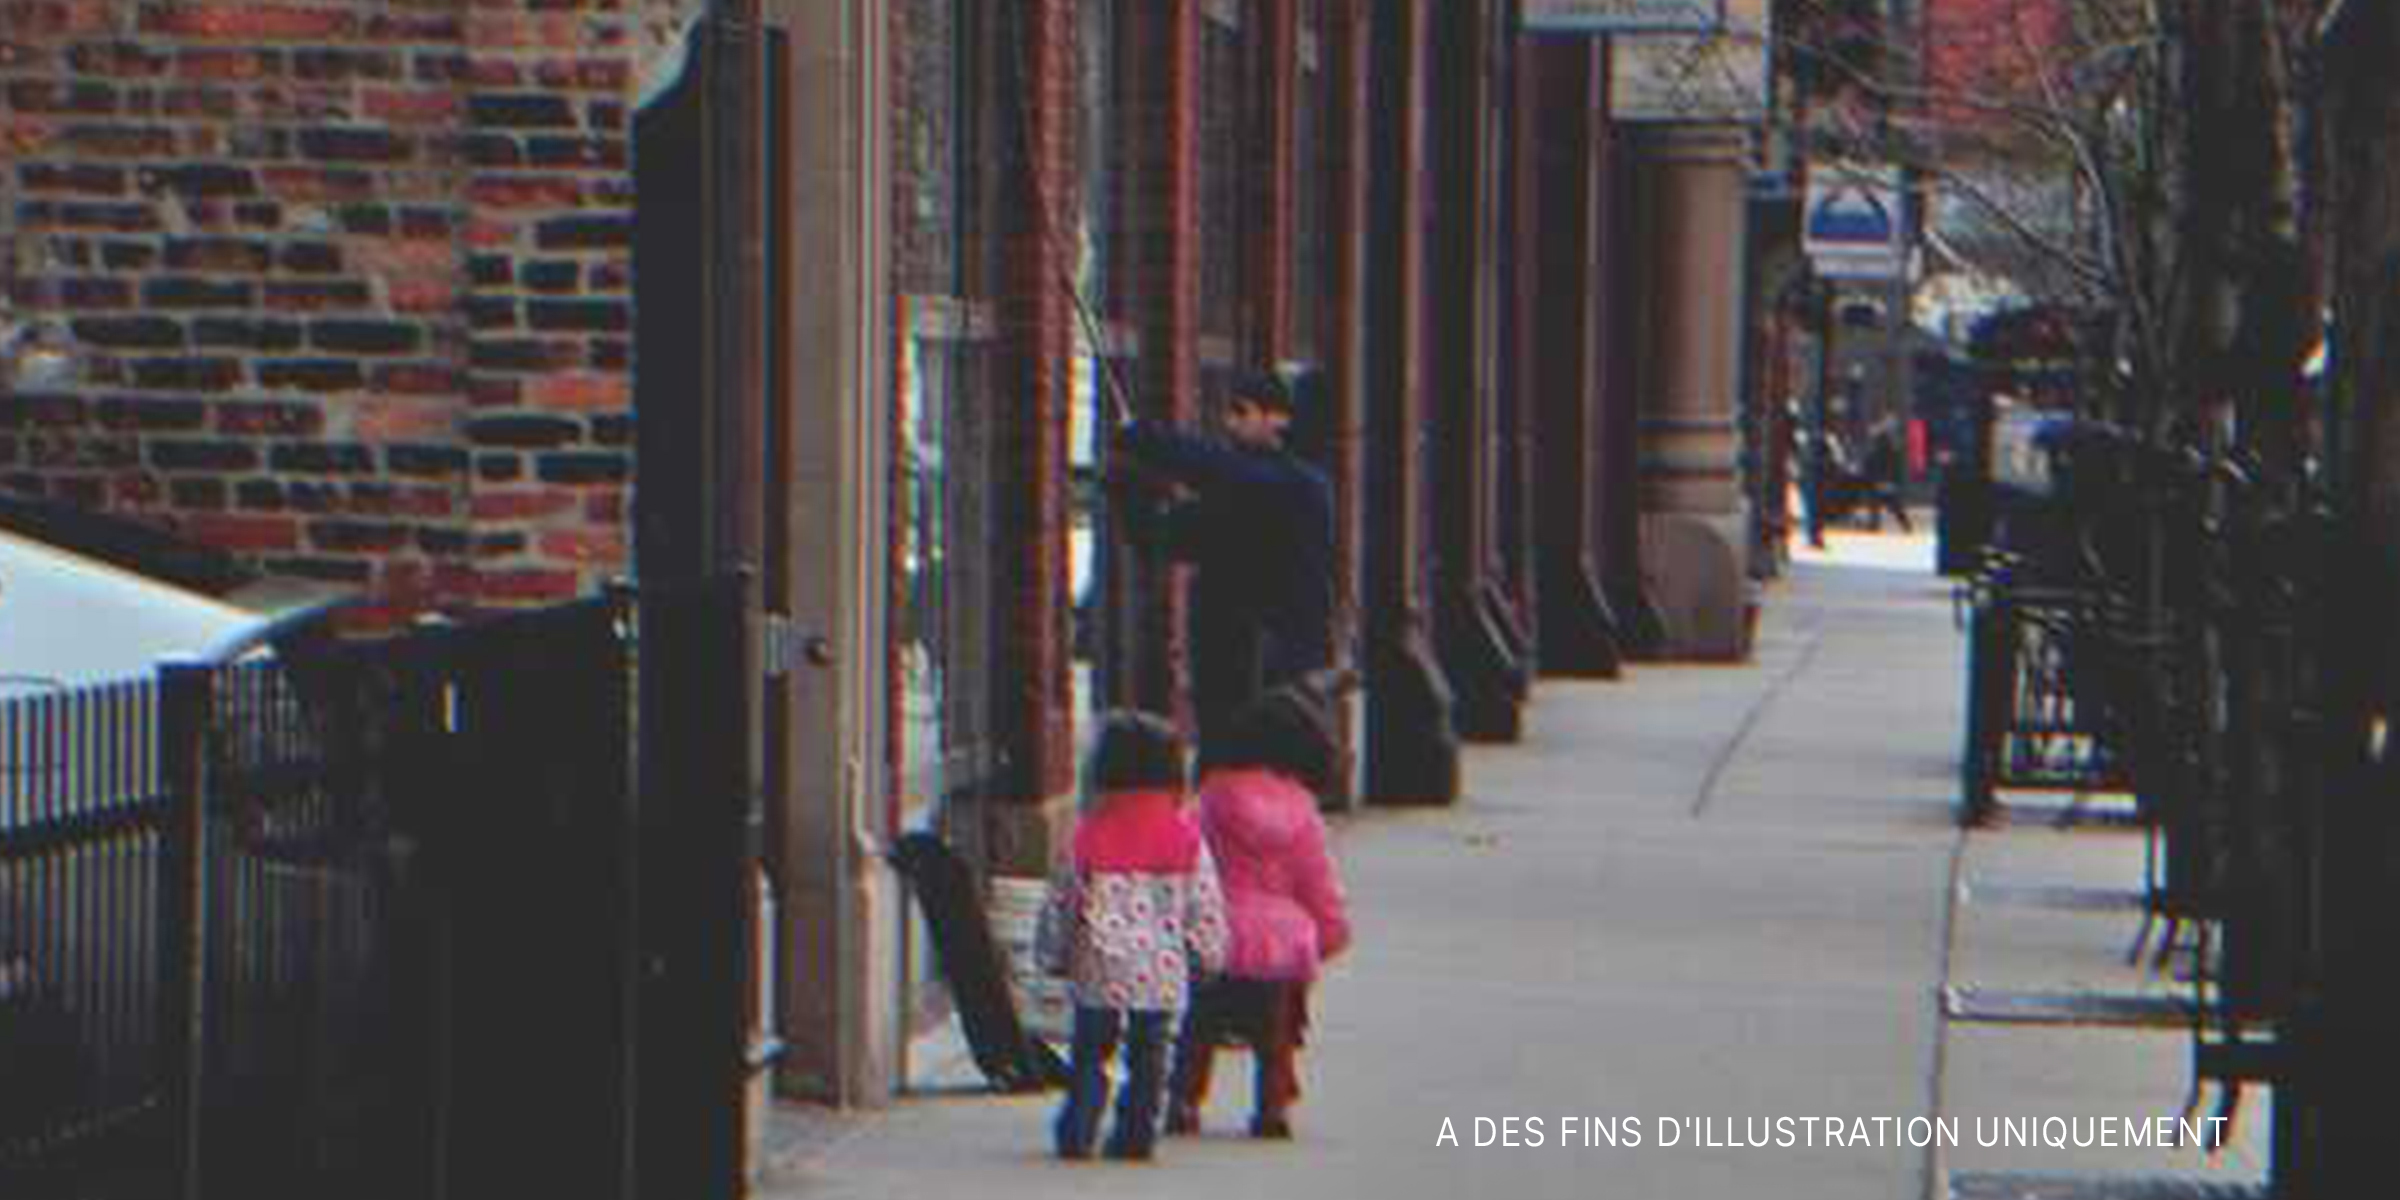 De petites filles marchant dans la rue | Source : Flickr / bradhoc